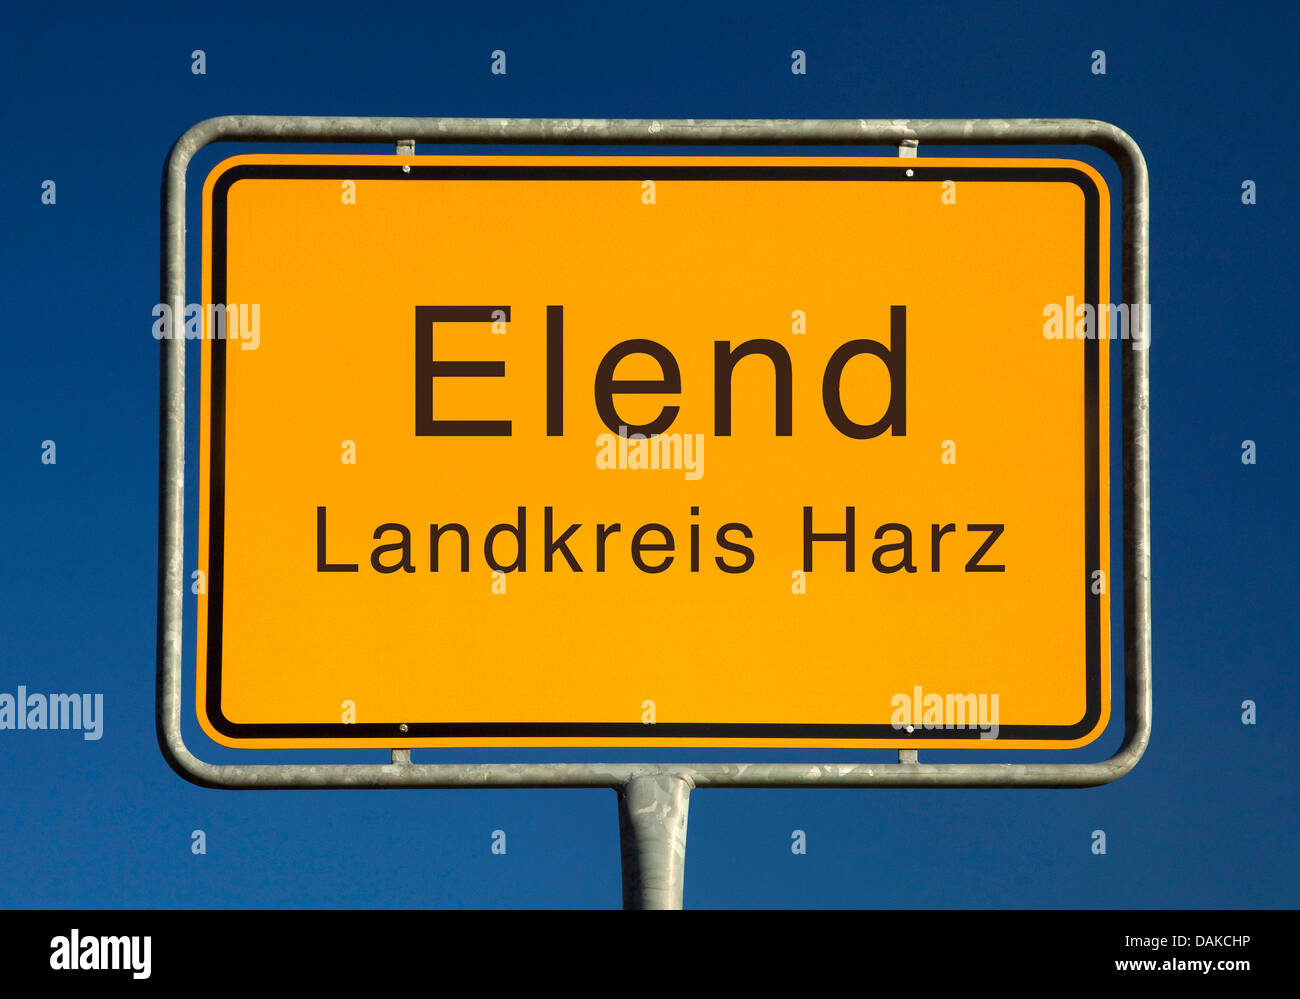 Elend Ort Namensschild, Elend, Harz, Sachsen-Anhalt, Deutschland Stockfoto